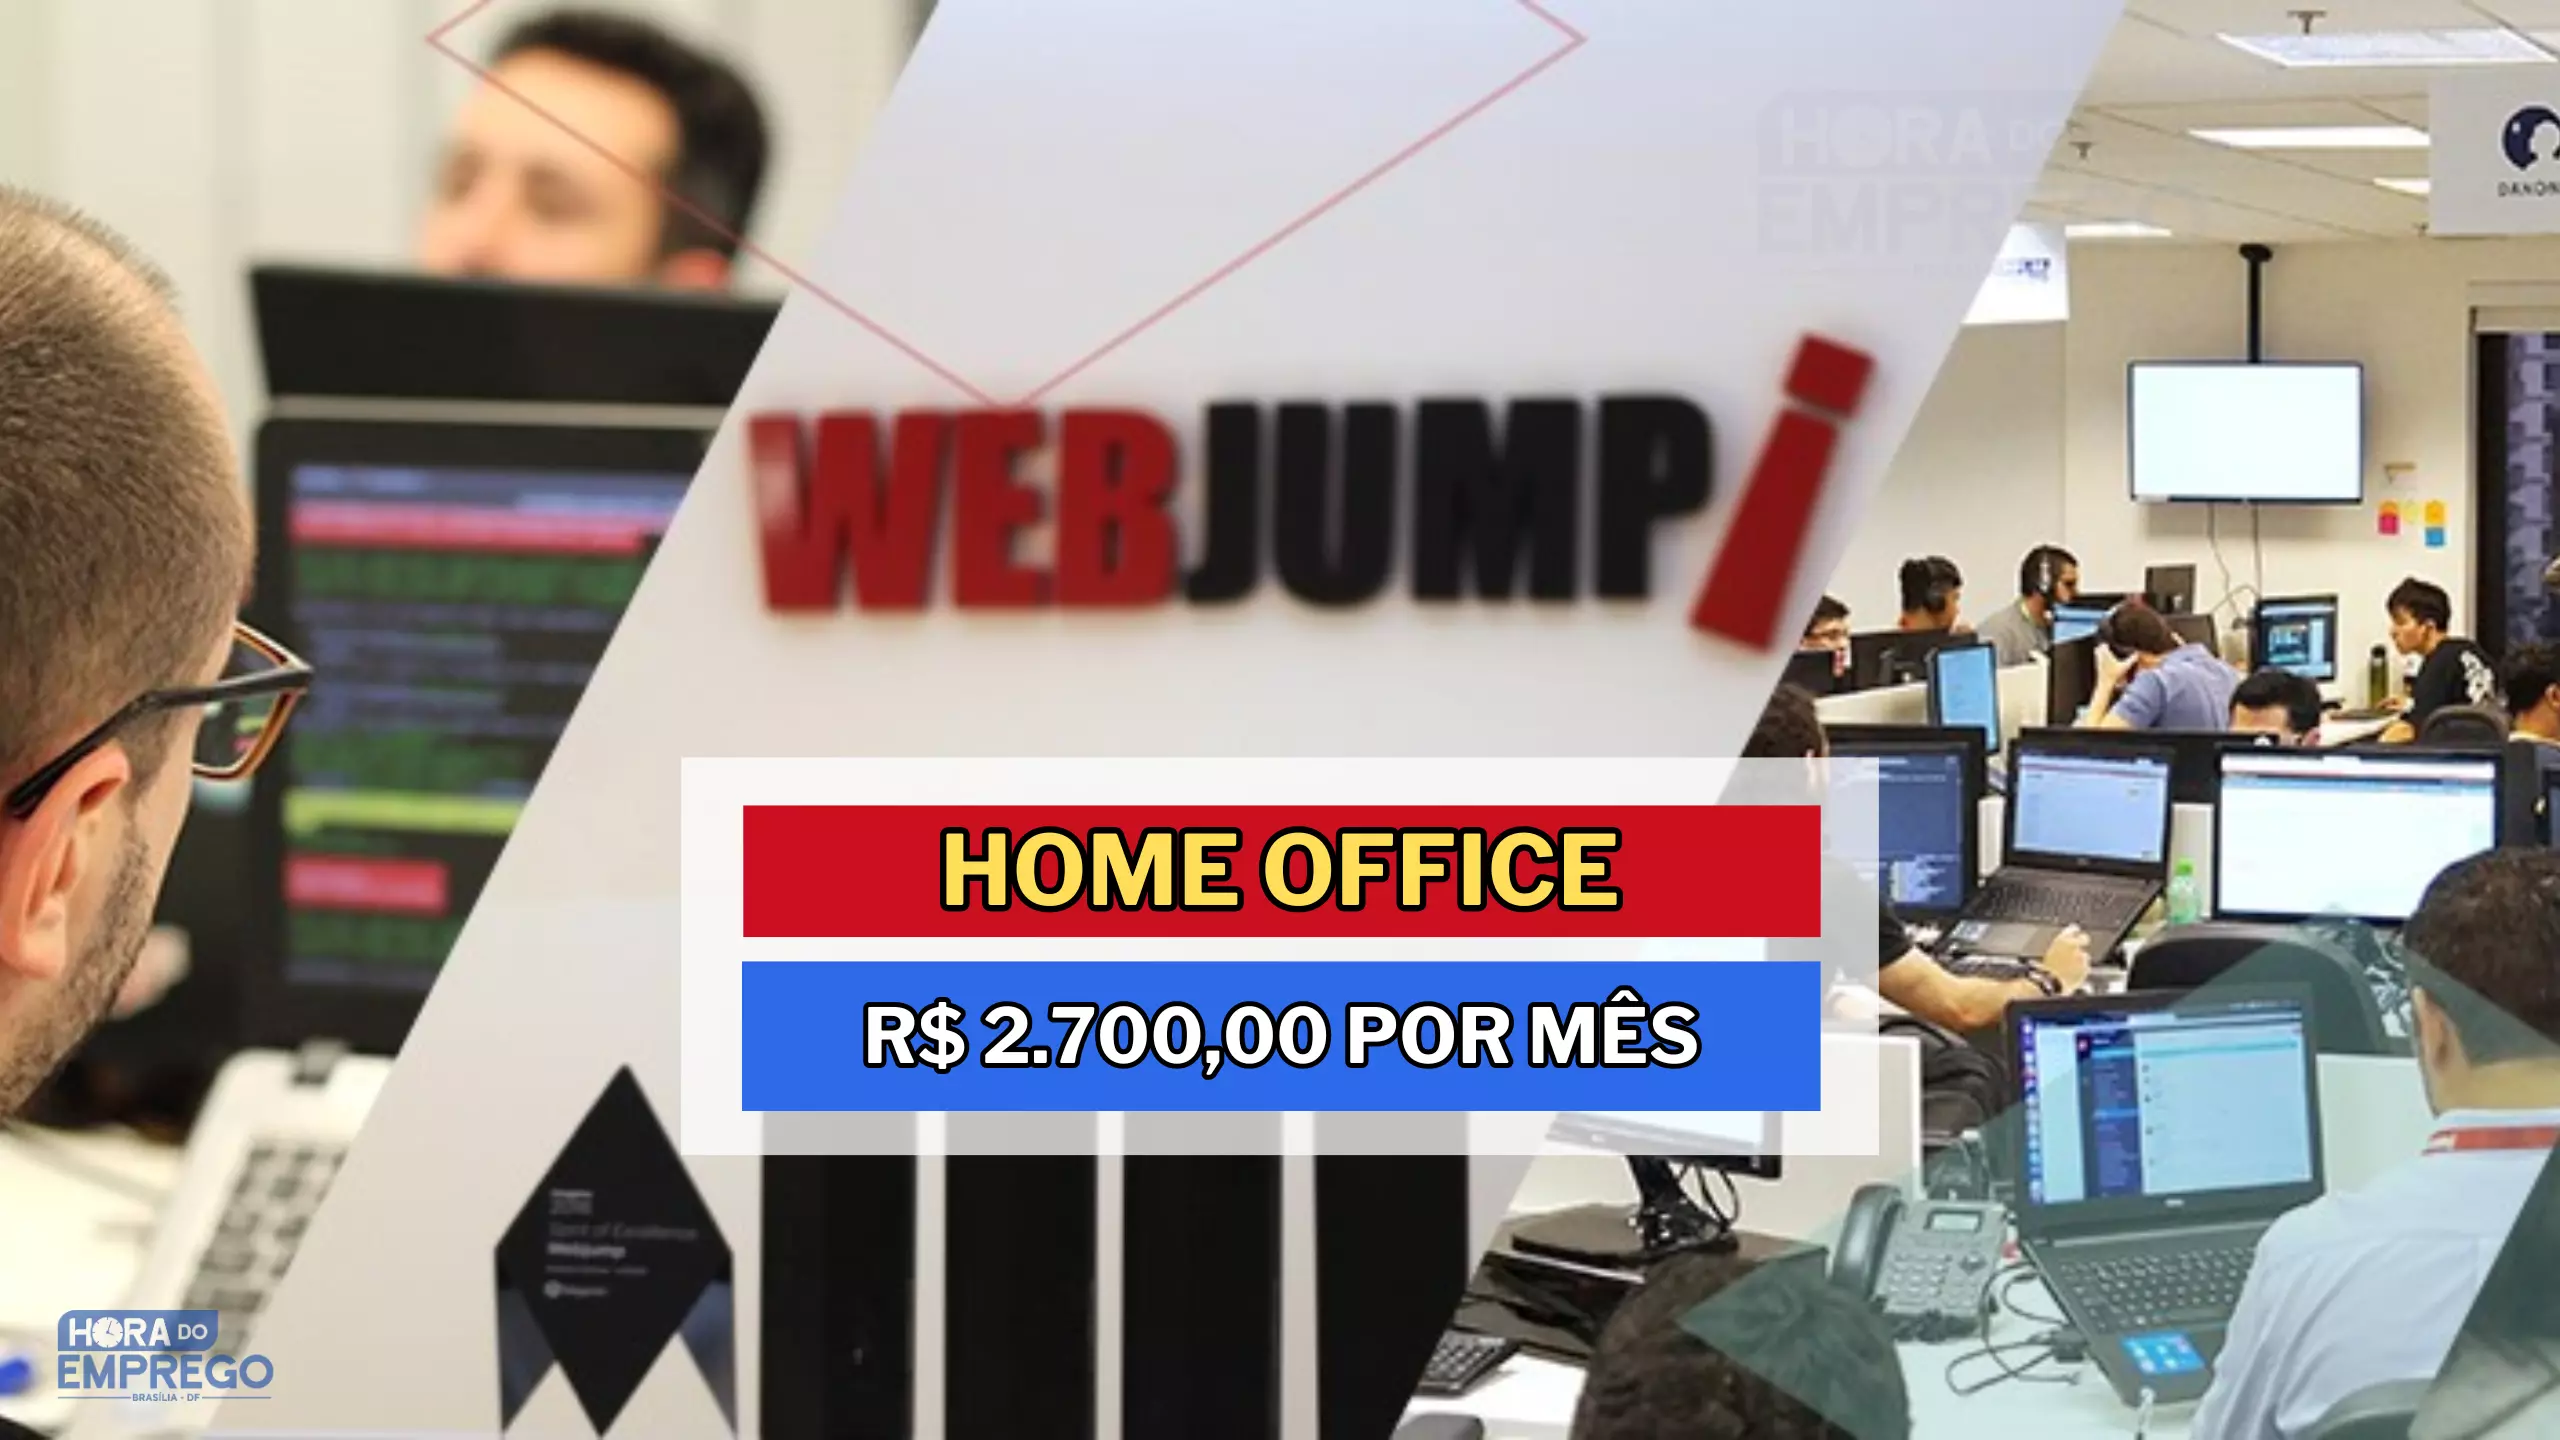 Webjump abre vagas 100% HOME OFFICE para Analista Administrativo com salário de R$ 2.700,00 MIL e até Auxílio Creche